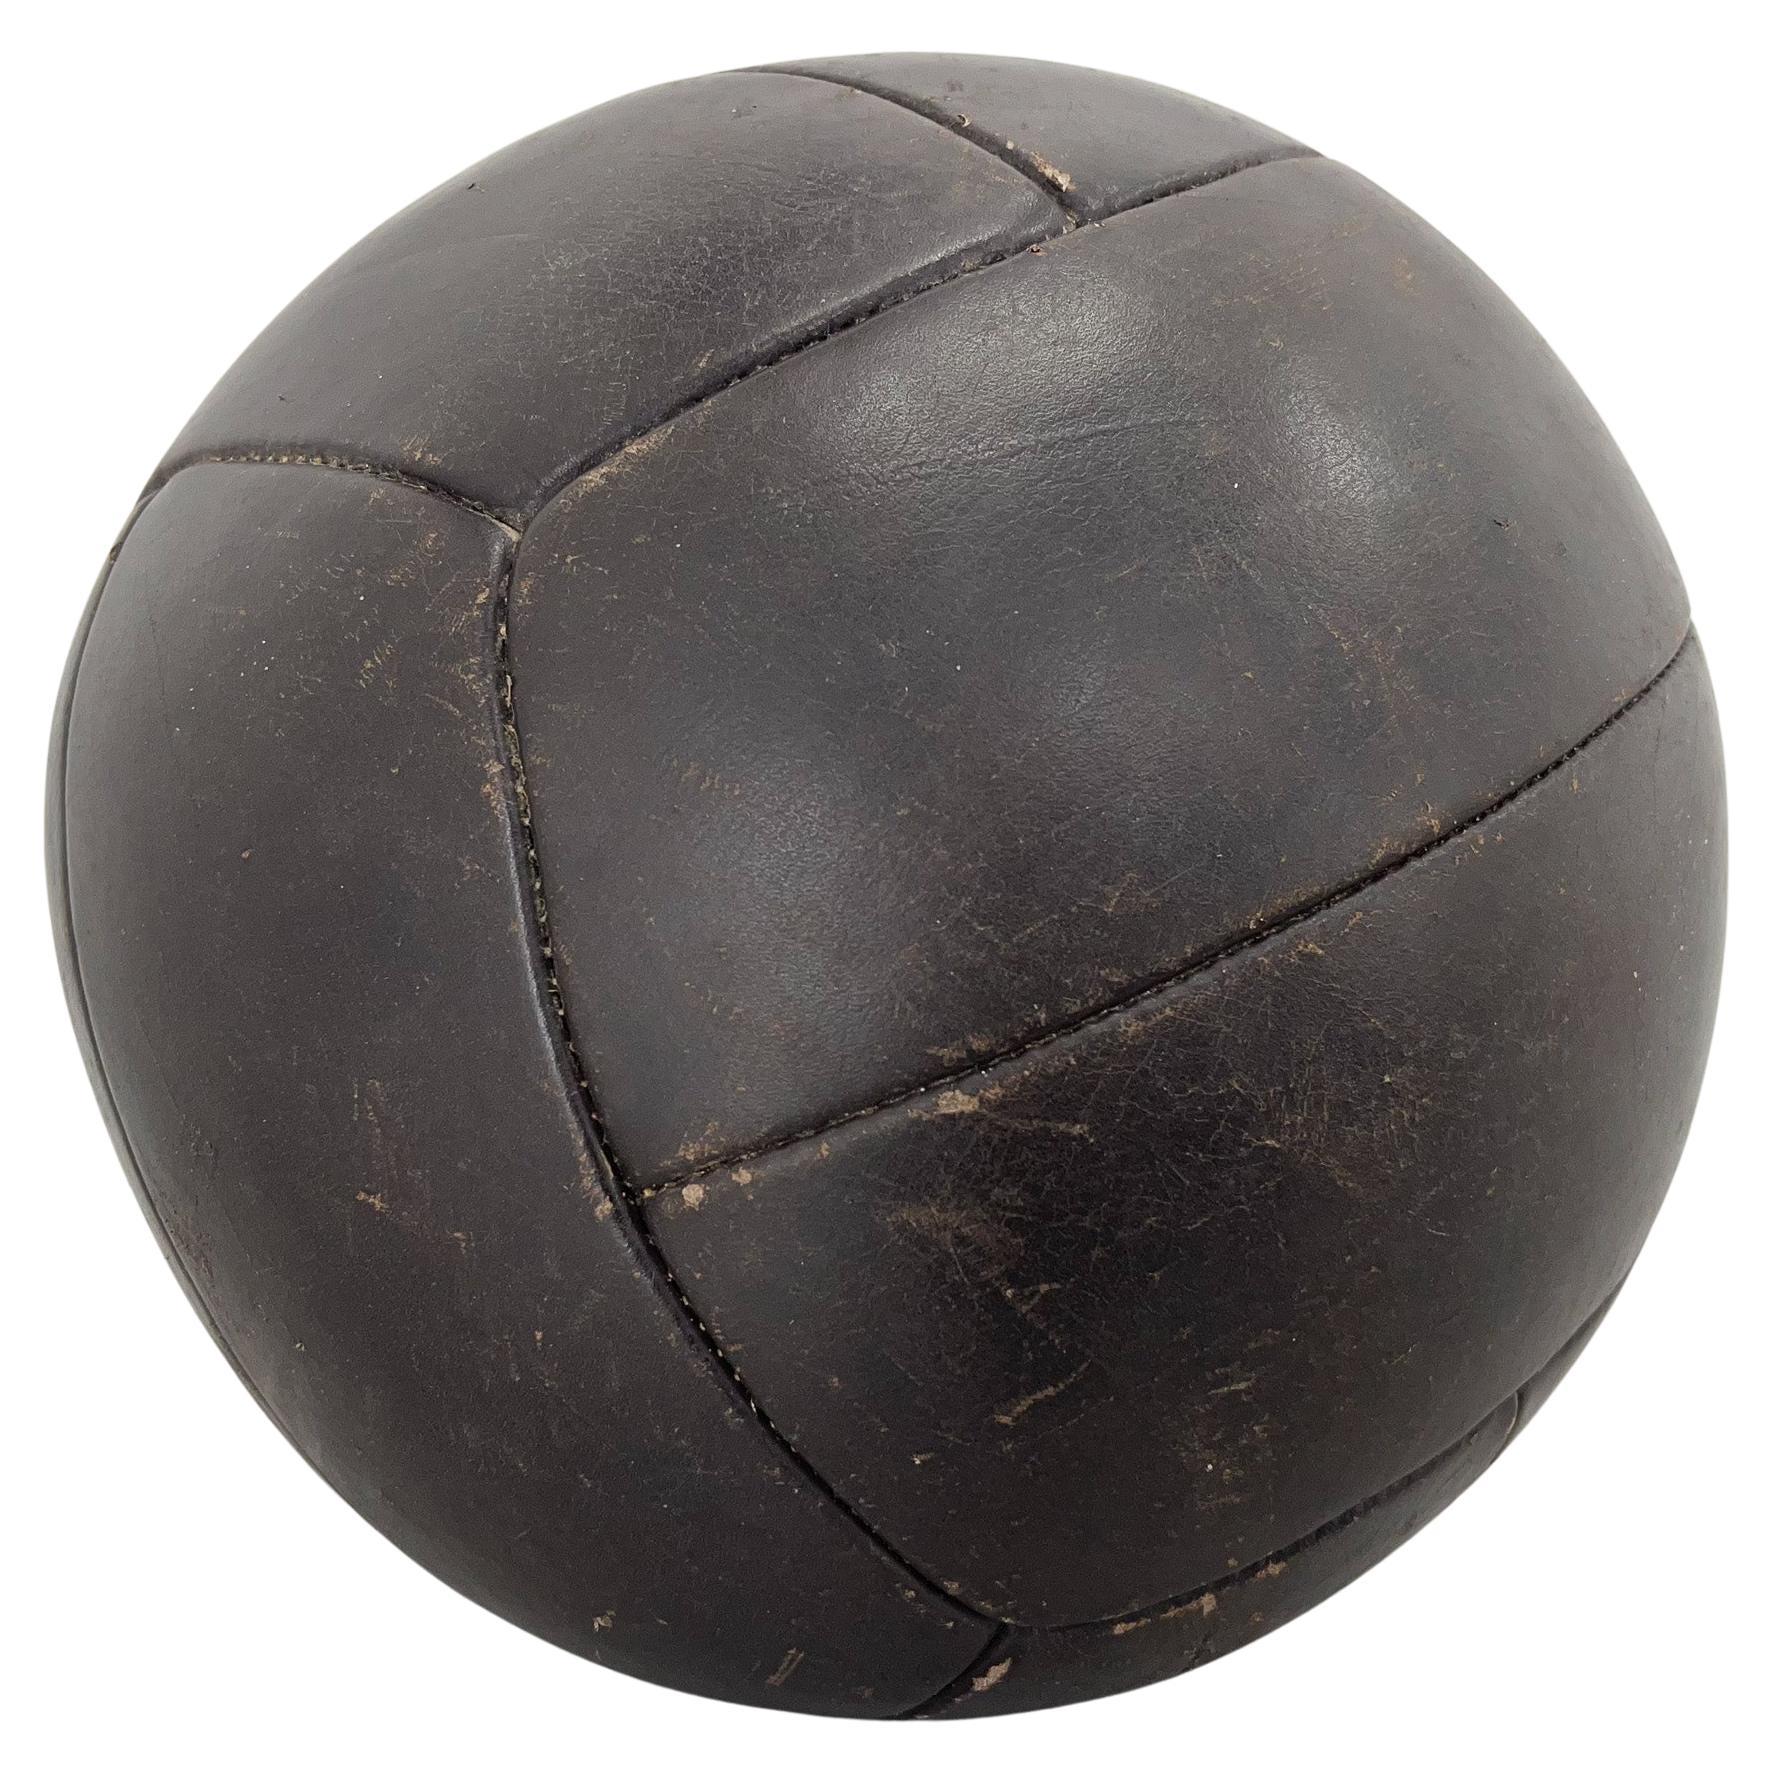 Large Vintage Black Leather Medicine Ball, 1930s